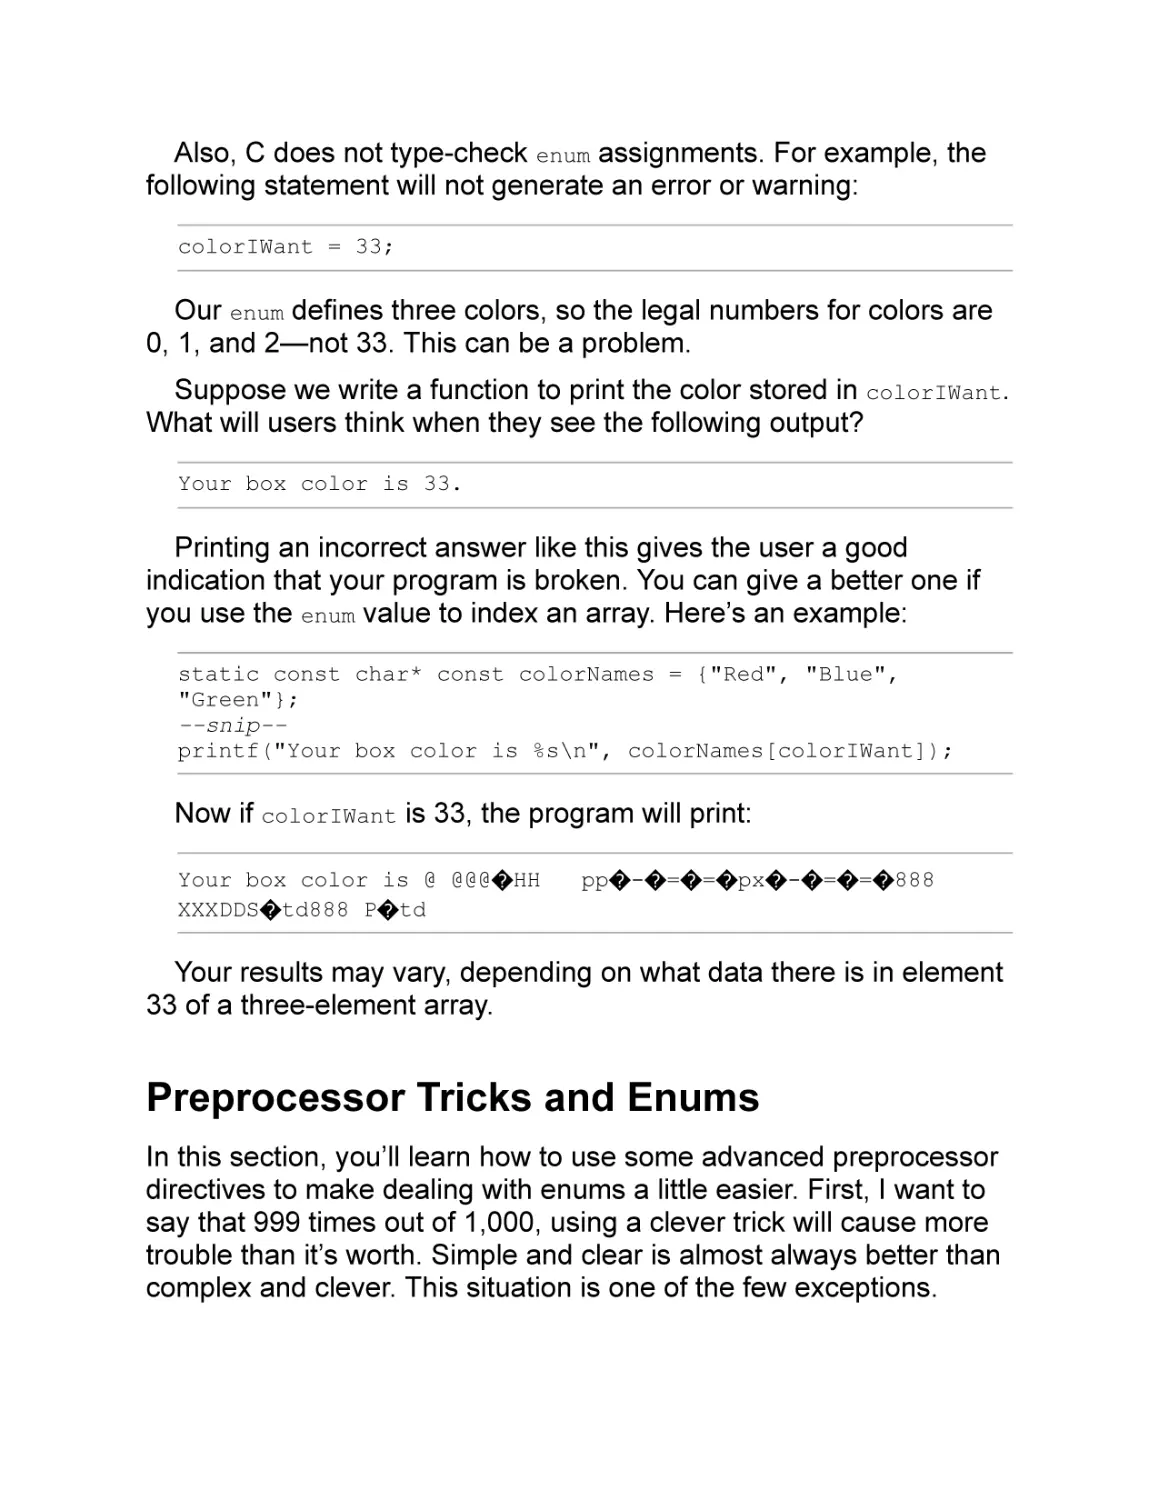 Preprocessor Tricks and Enums